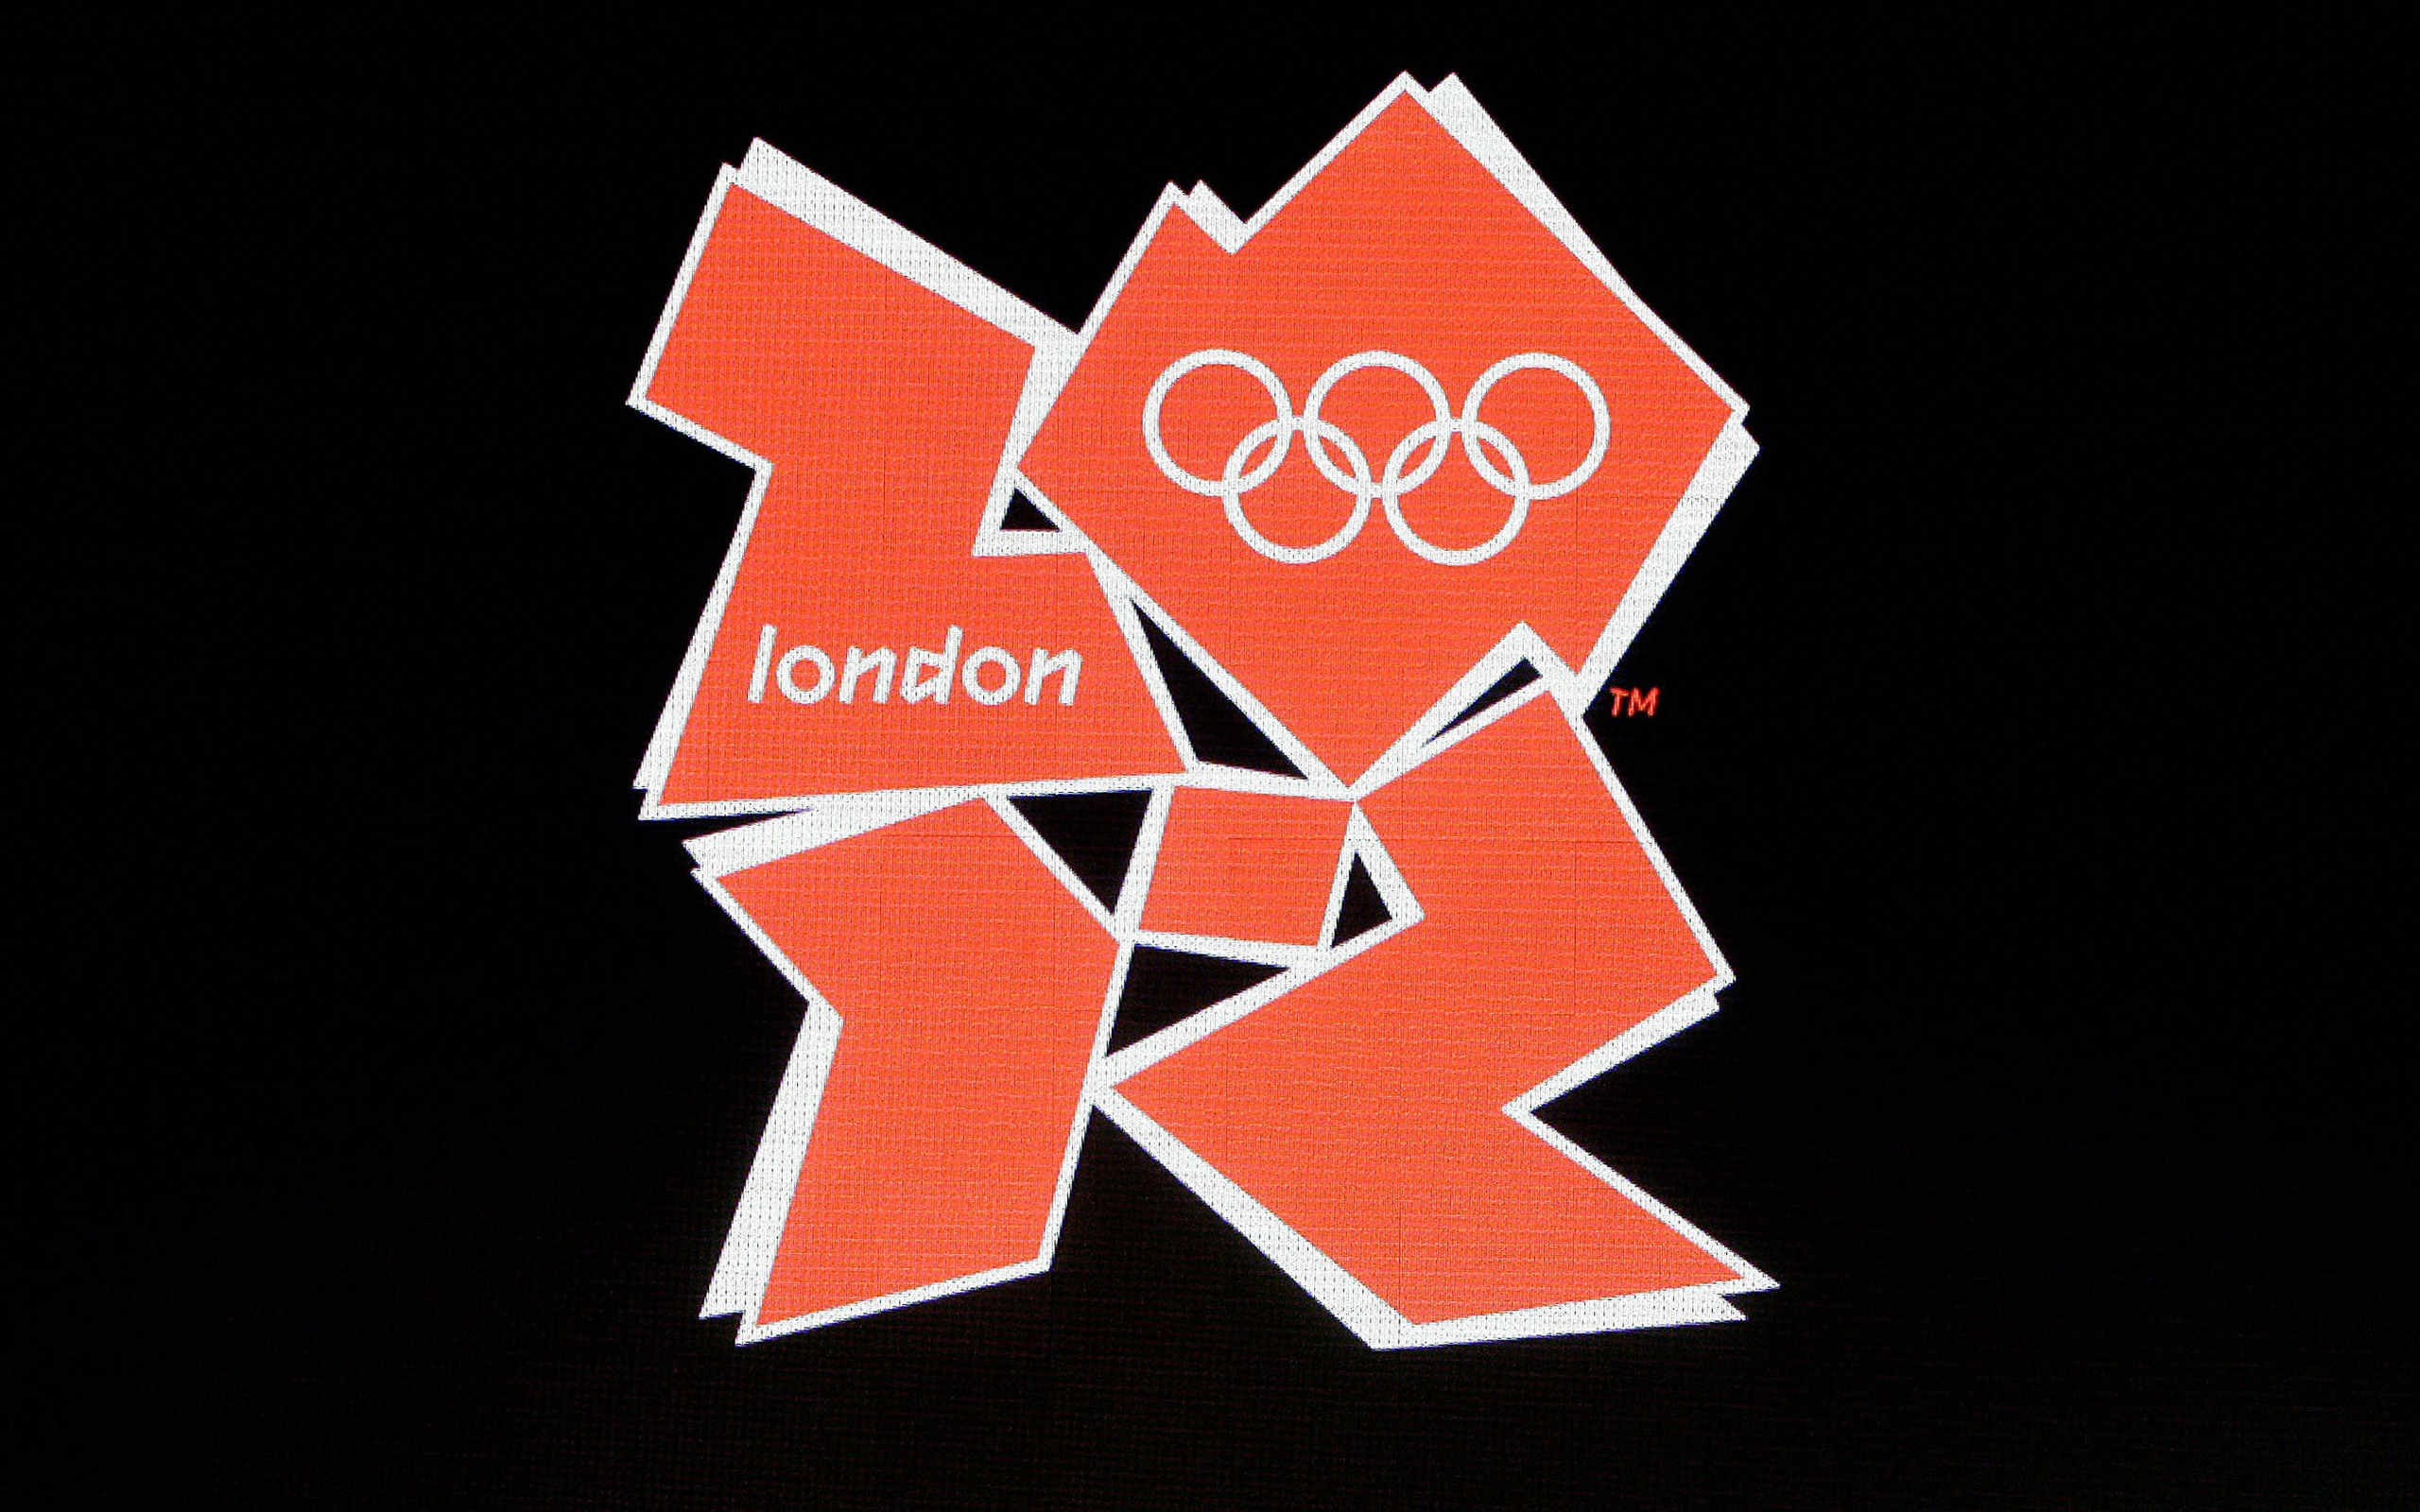 Londres 2012 Olimpiadas fondos temáticos (2) #30 - 2560x1600